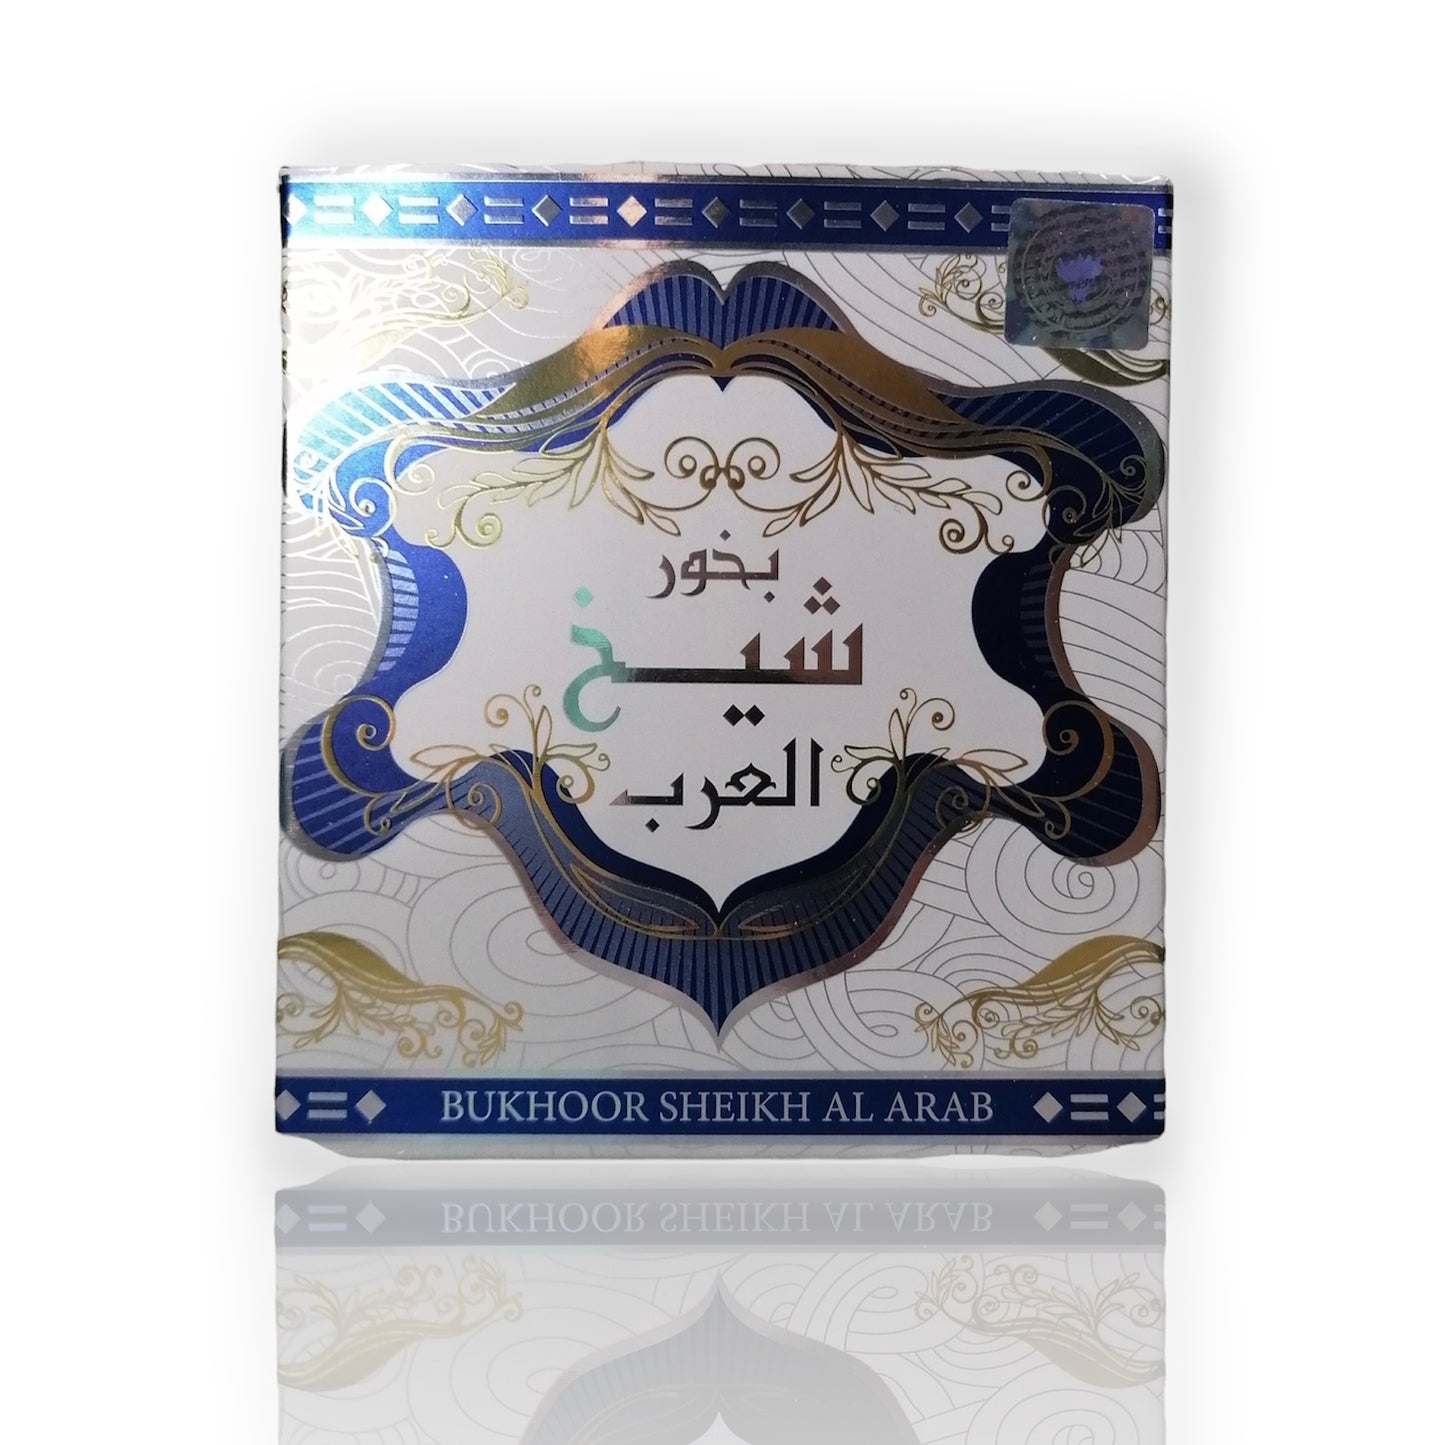 Oriental Incense: Sheikh Al Arab